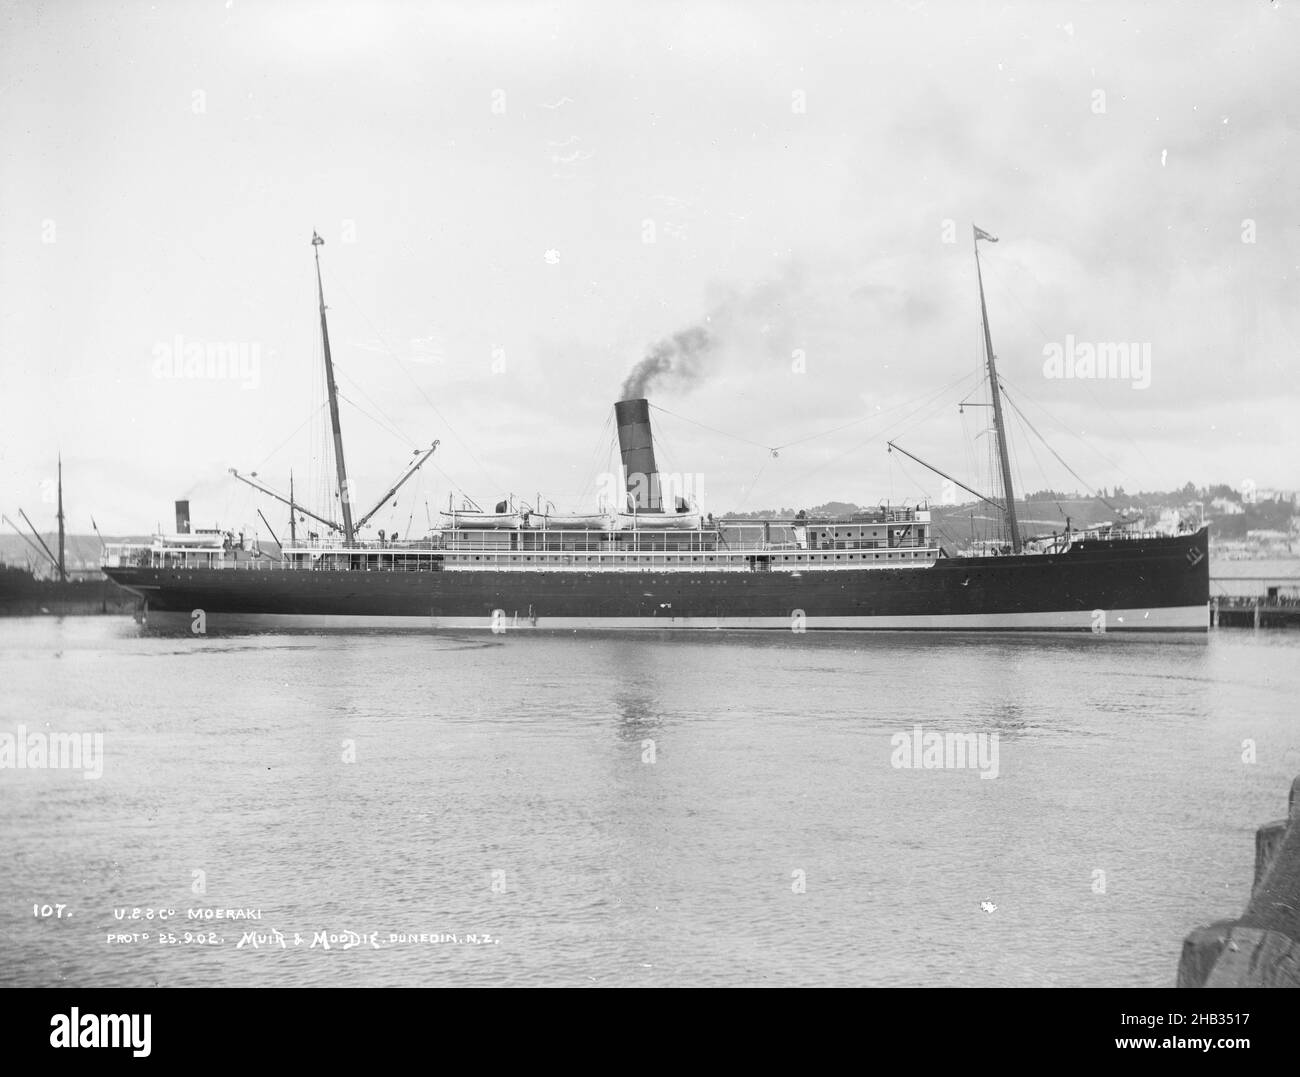 Union Steam Ship Co. Moeraki, studio Muir & Moodie, studio de photographie, Nouvelle-Zélande, photographie en noir et blanc, Boat is the Moeraki Banque D'Images